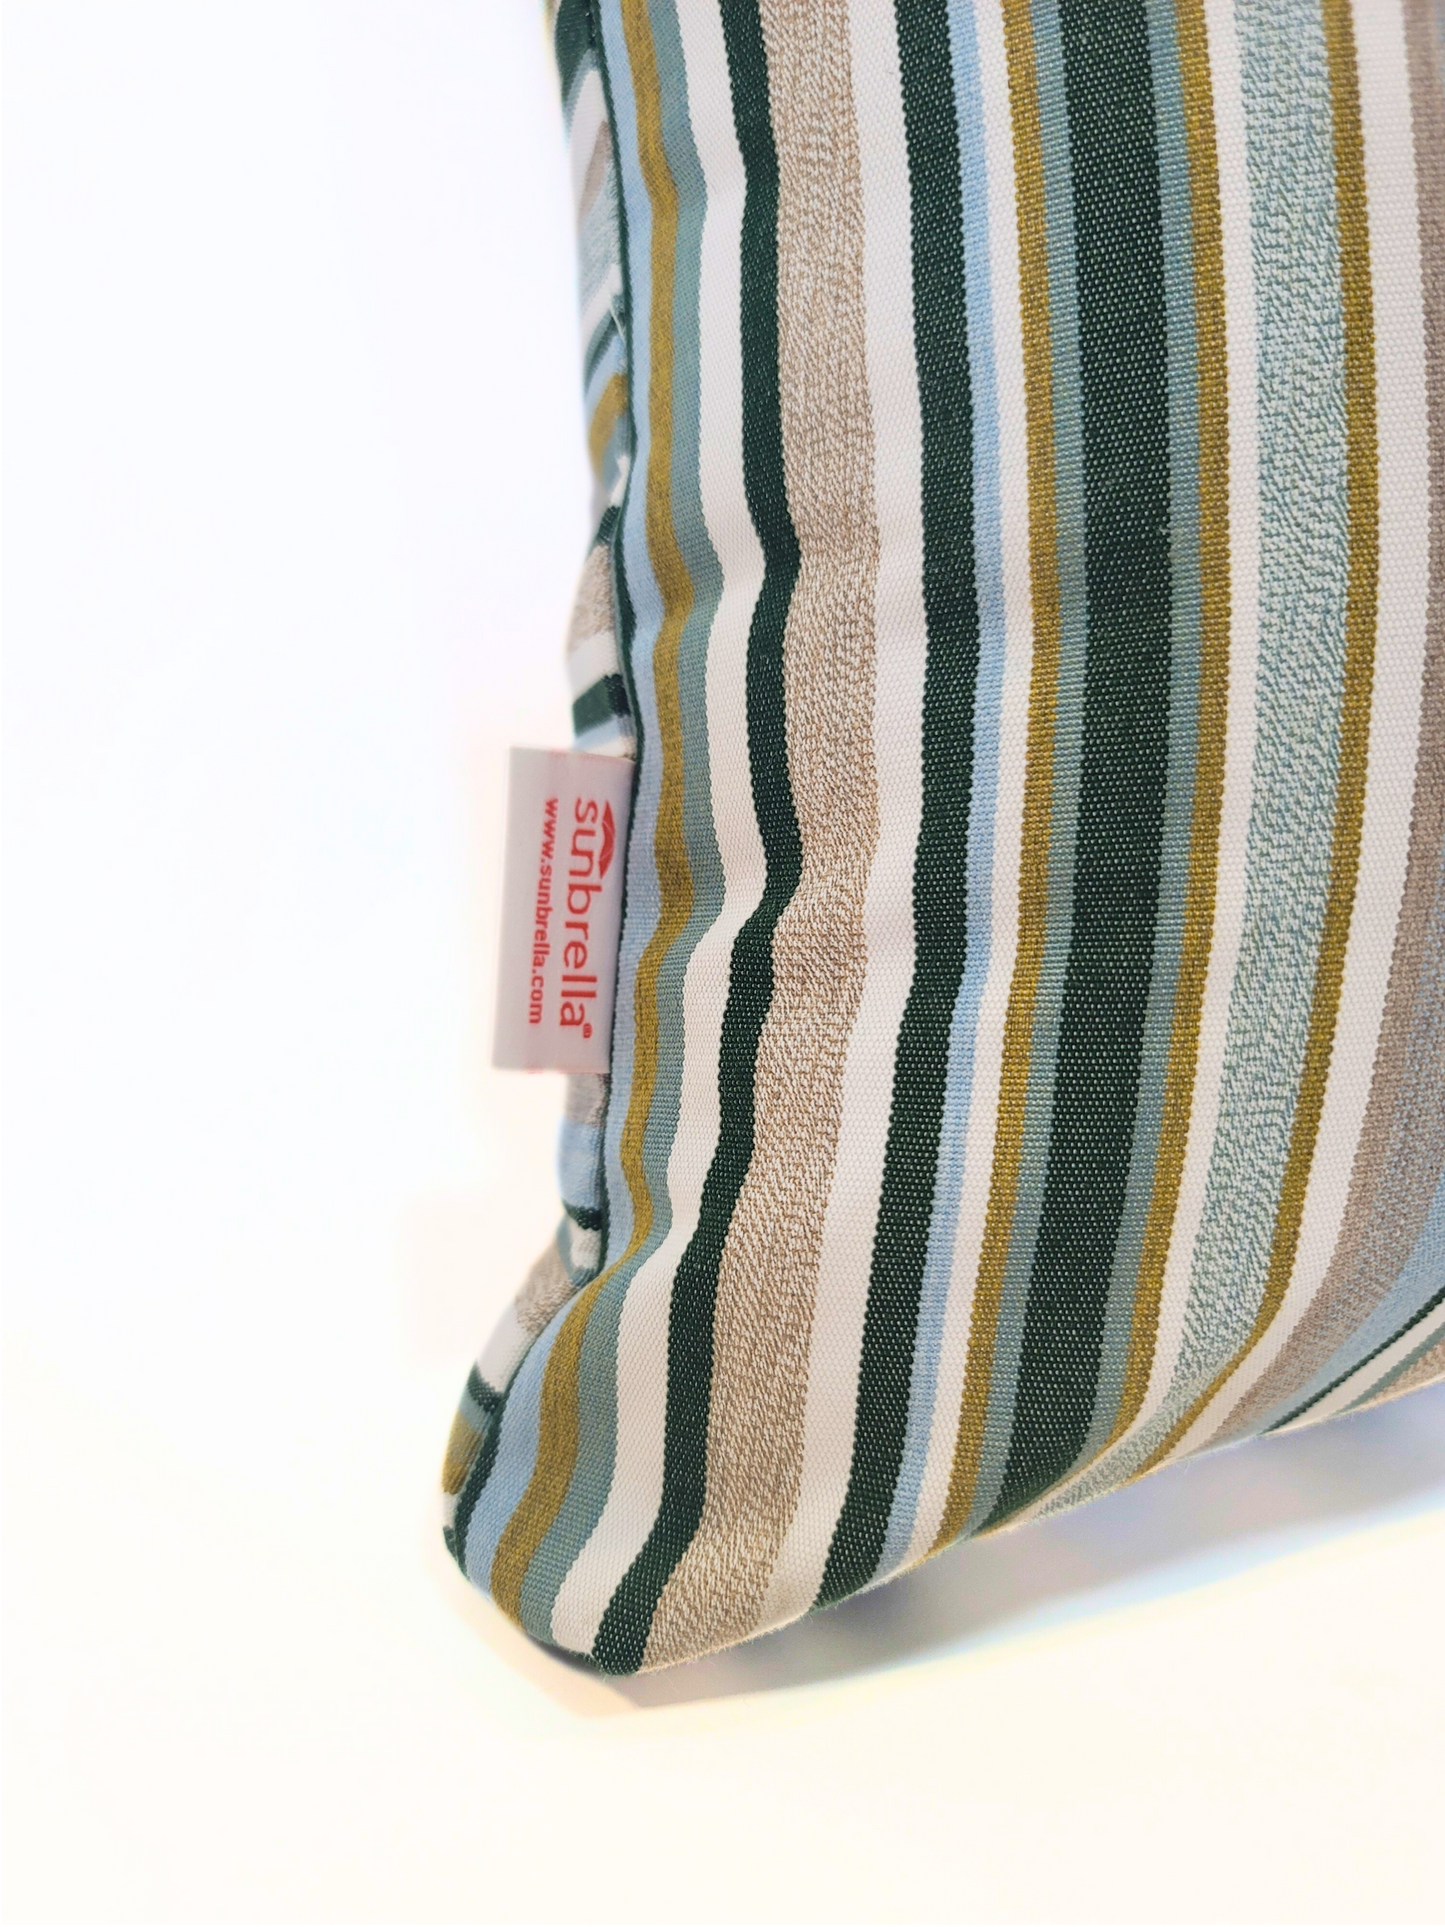 Sunbrella "Nantucket Pine" Indoor/Outdoor Toss Pillow Cover